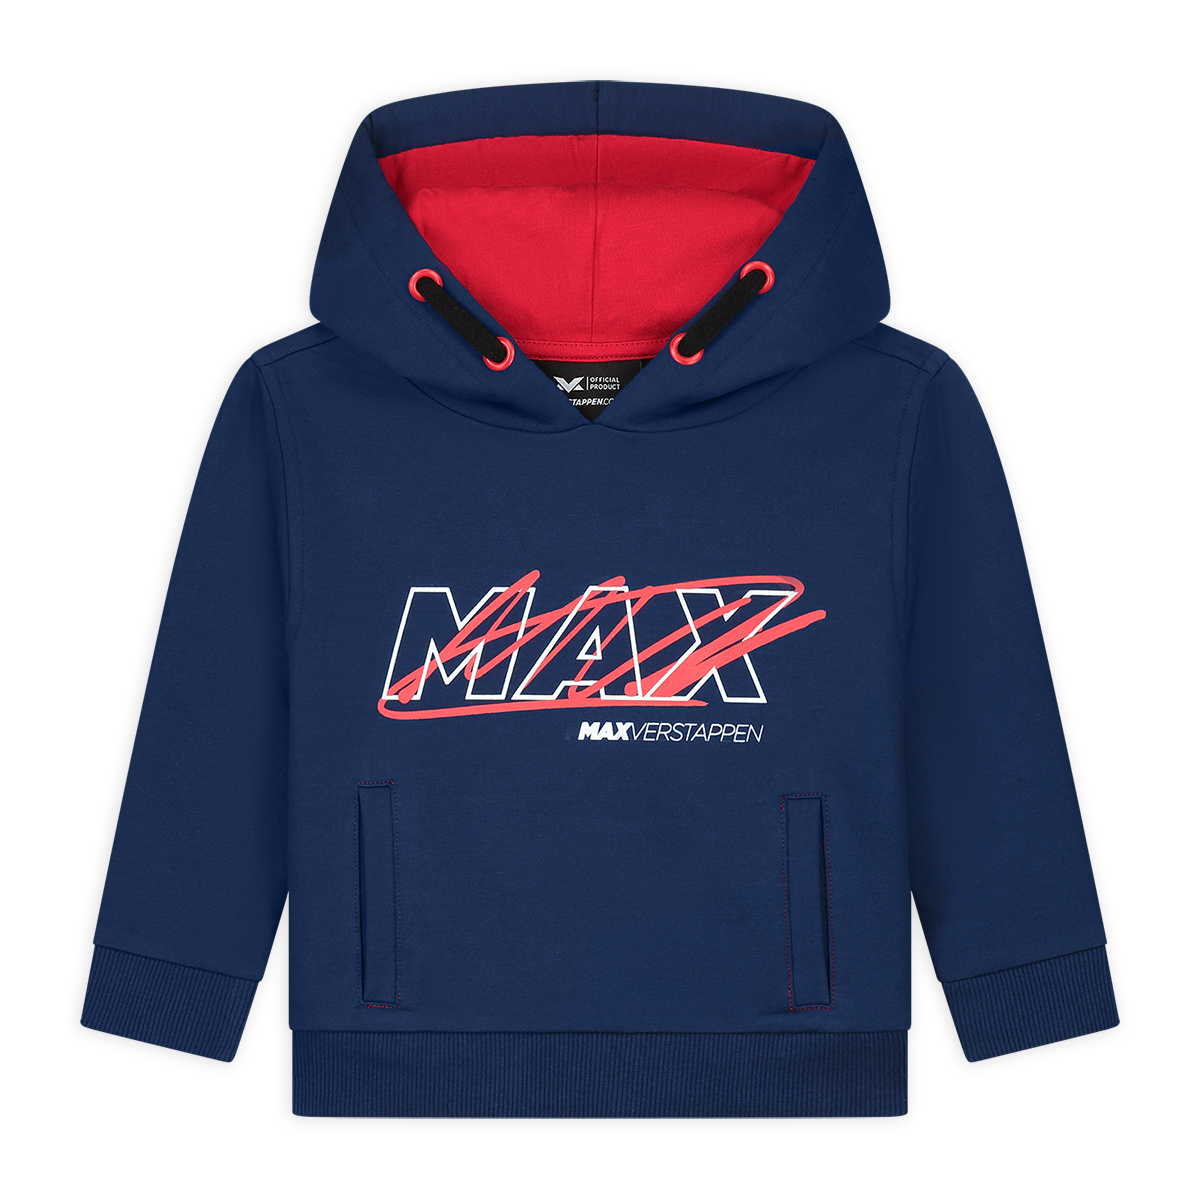 GO MAX!! 🦁👑 Gaat Max Verstappen de - Back to the Toys